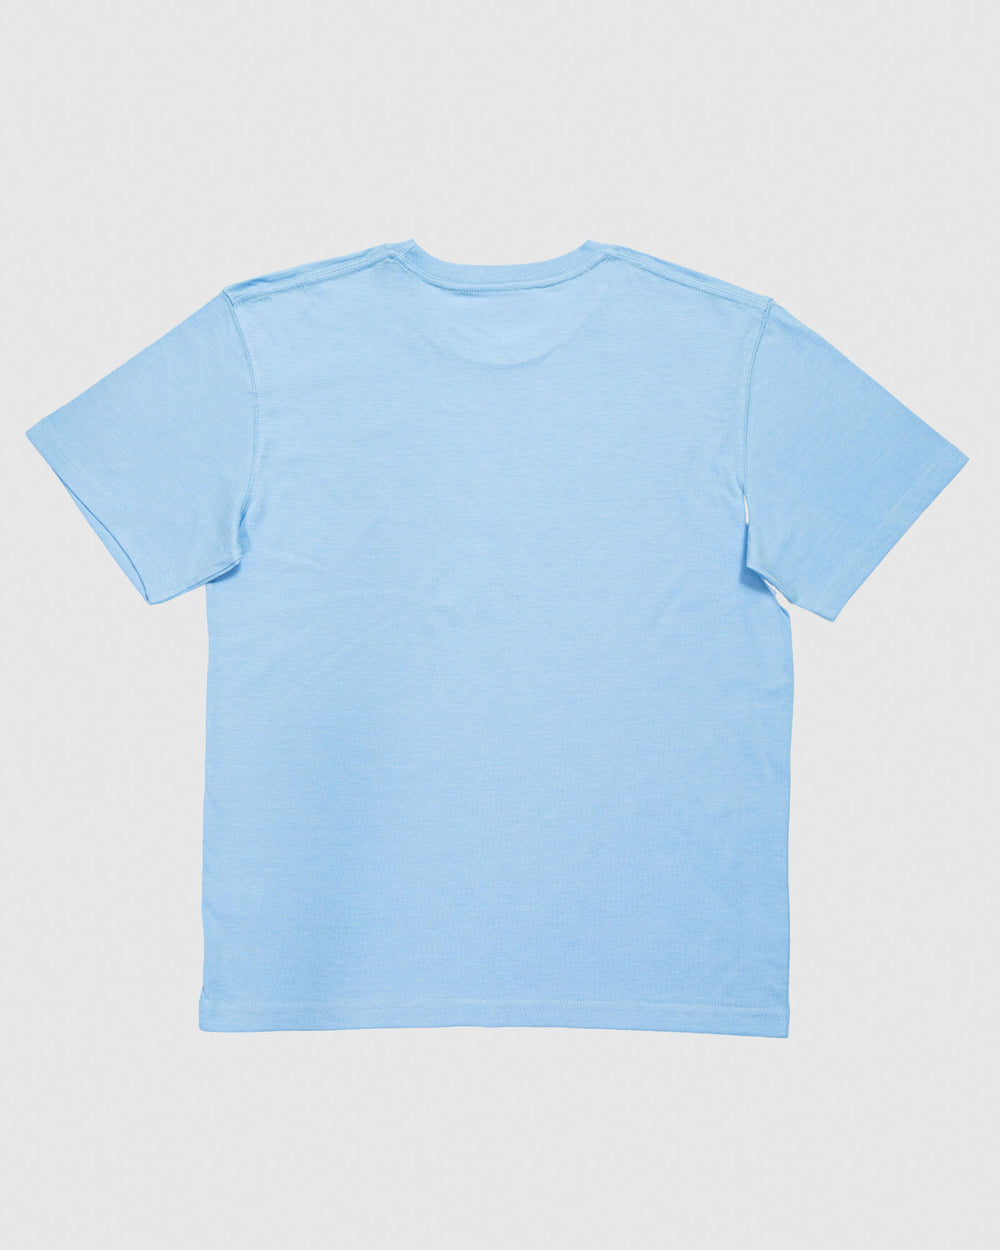 Back of carolina blue t-shirt